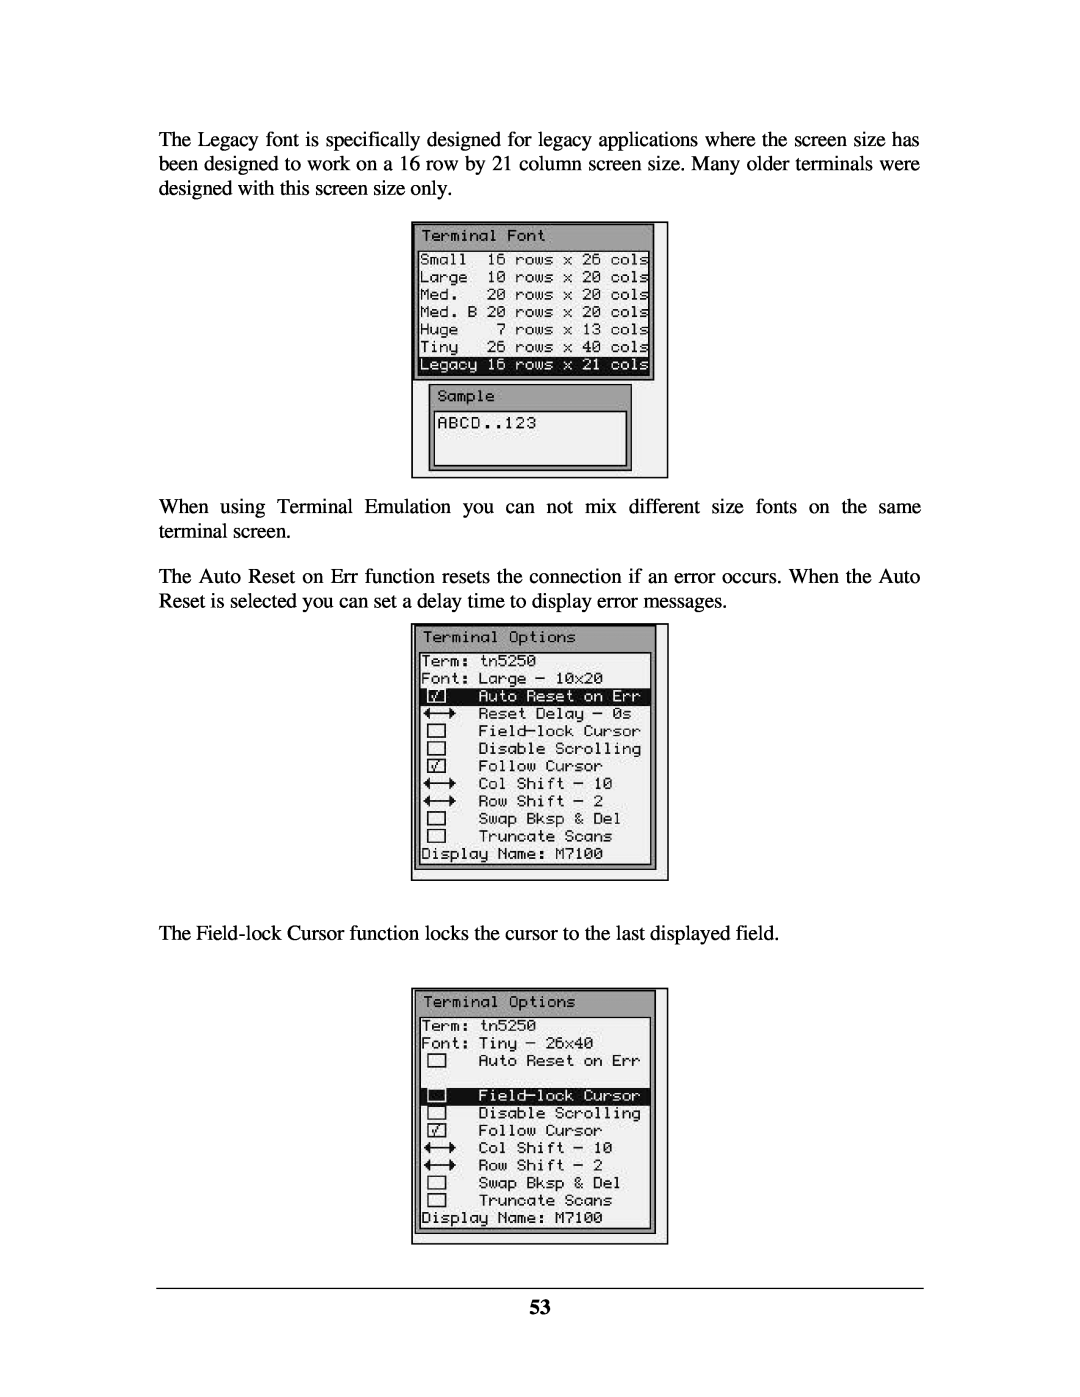 IBM M71V2 manual 